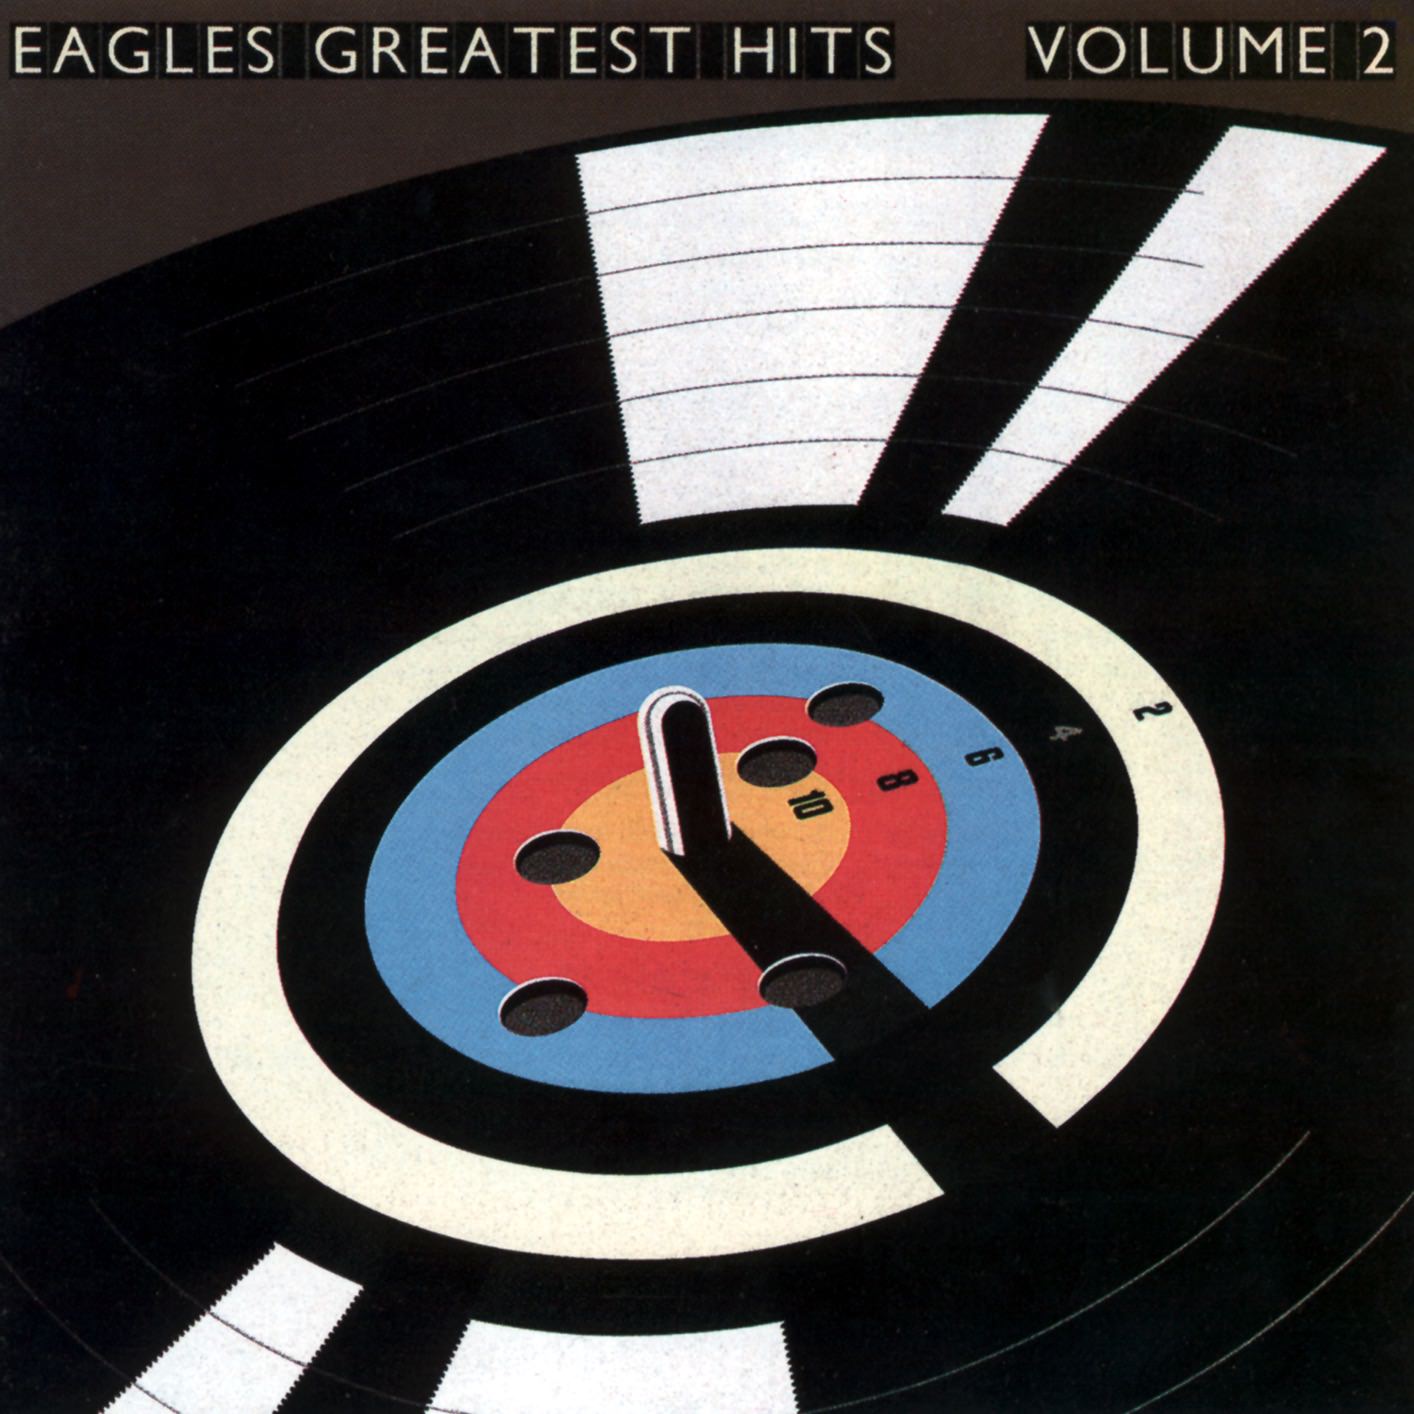 Eagles - Eagles Greatest Hits Volume 2 (1982/2013/2017) [Qobuz FLAC 24bit/192kHz]